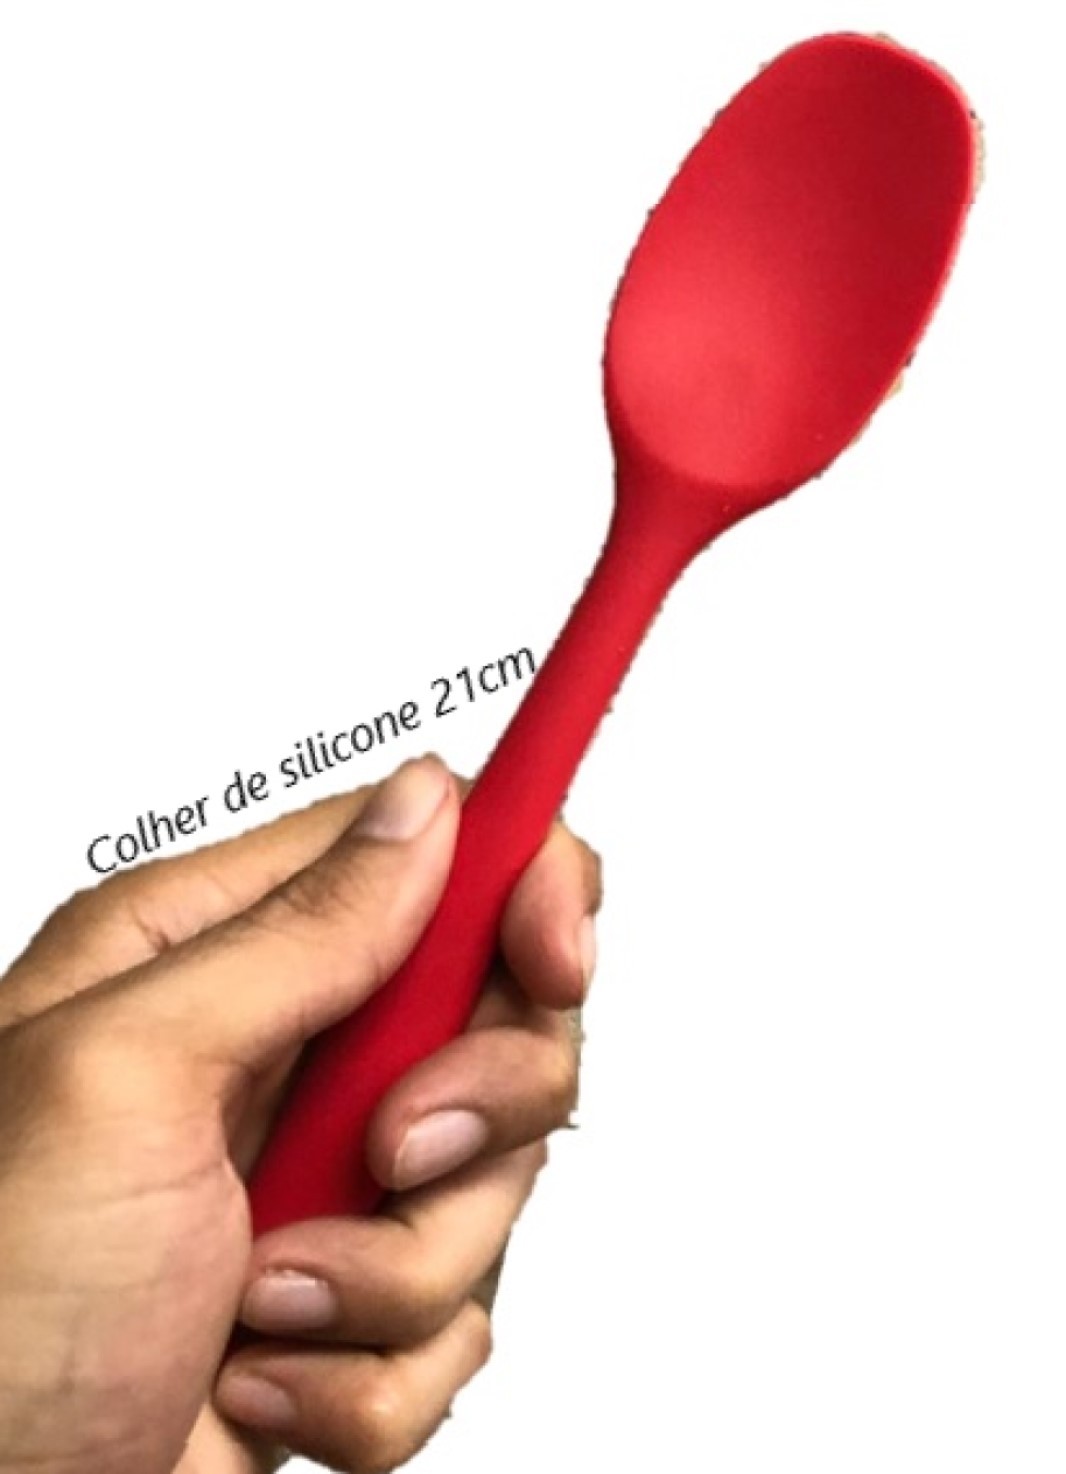 Colher de silicone para cozinha raspadora arroz vermelha alta qualidade 21cm ck4523